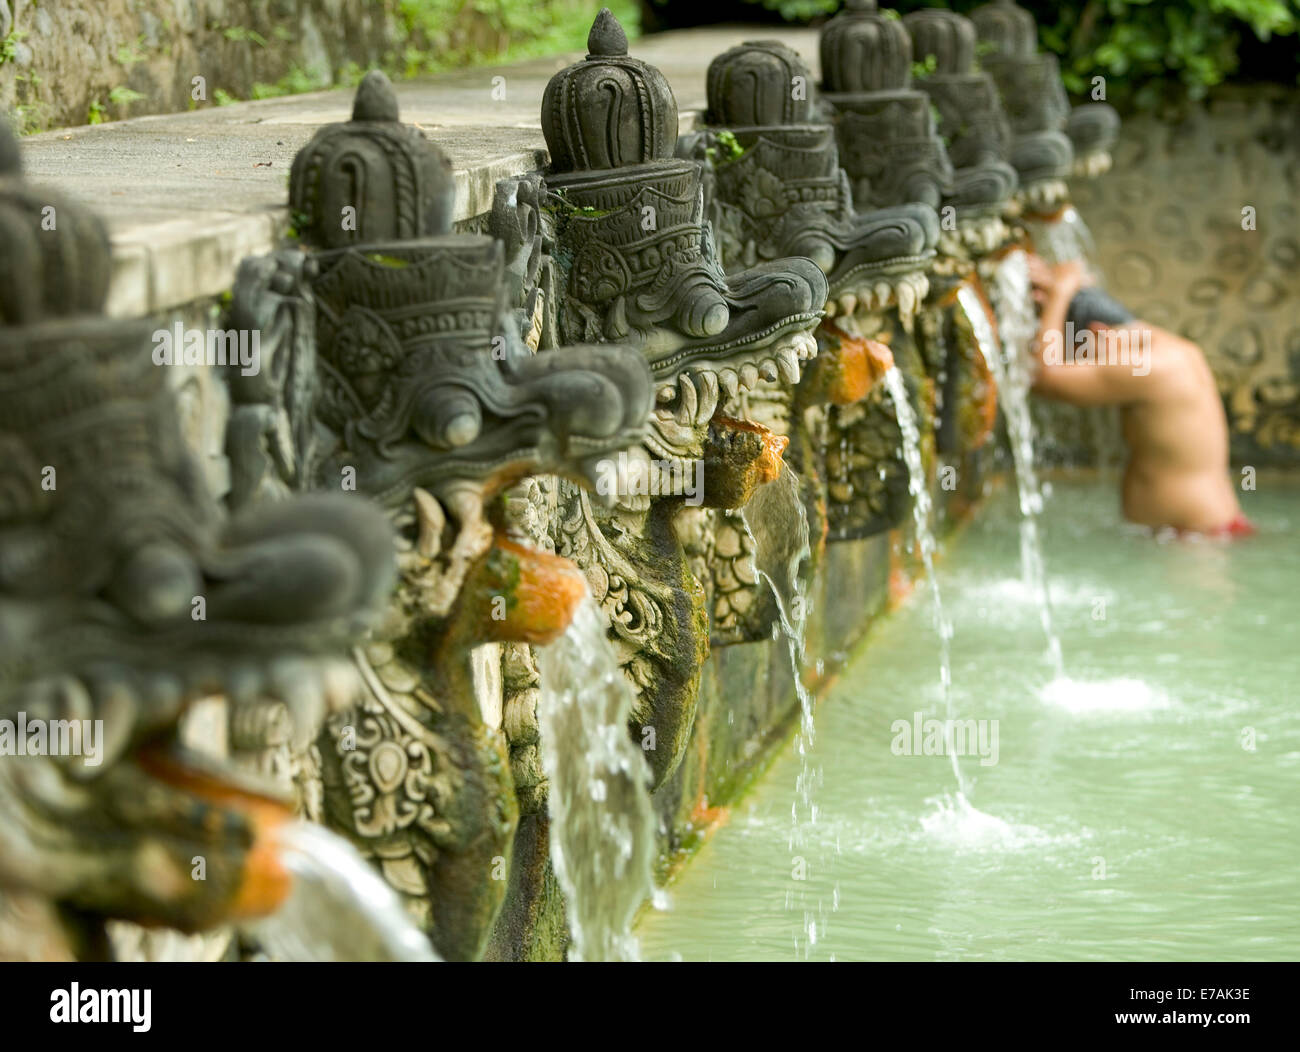 Persona bañarse en piedra tallada dragones en piscinas termales en Bali, Indonesia. Foto de stock